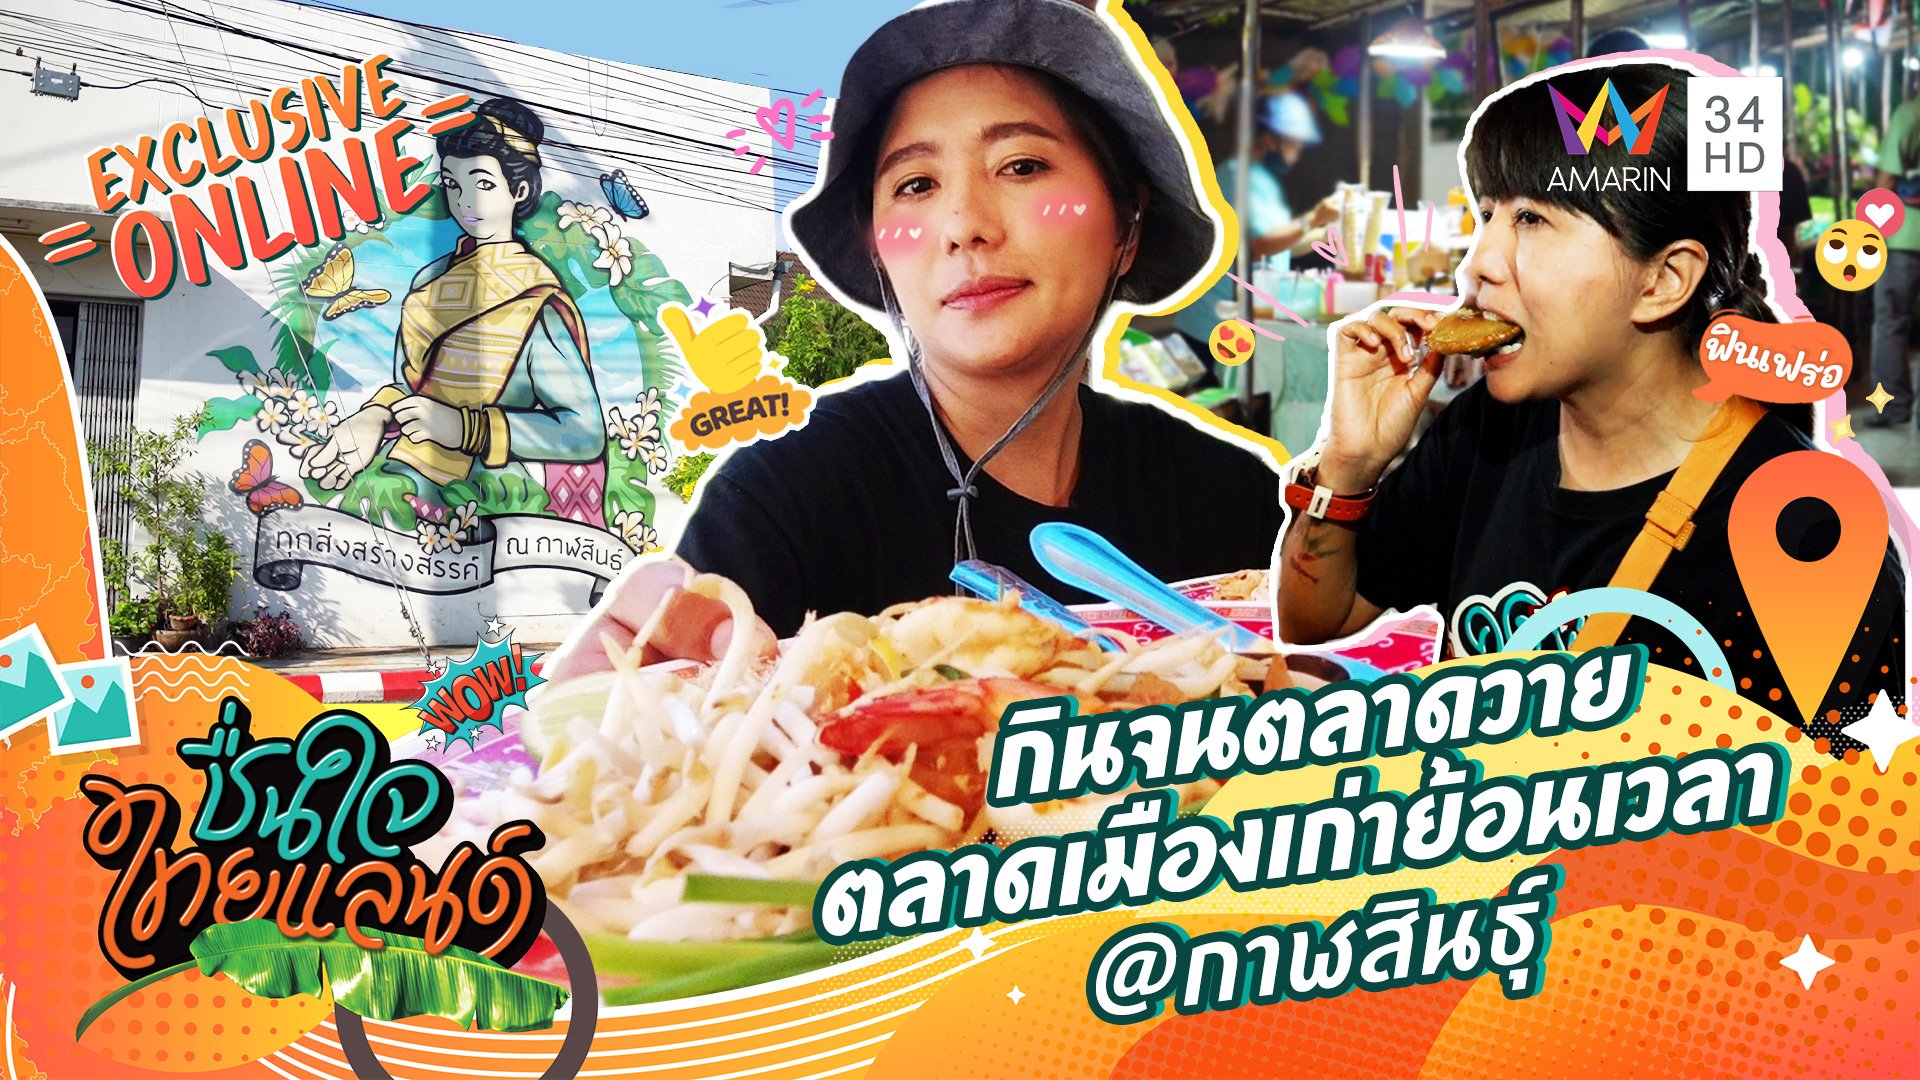 กินจนตลาดวาย ที่...ตลาดเมืองเก่าย้อนเวลา @กาฬสินธุ์ | ชื่นใจไทยแลนด์ | 15 ส.ค. 65 | AMARIN TVHD34